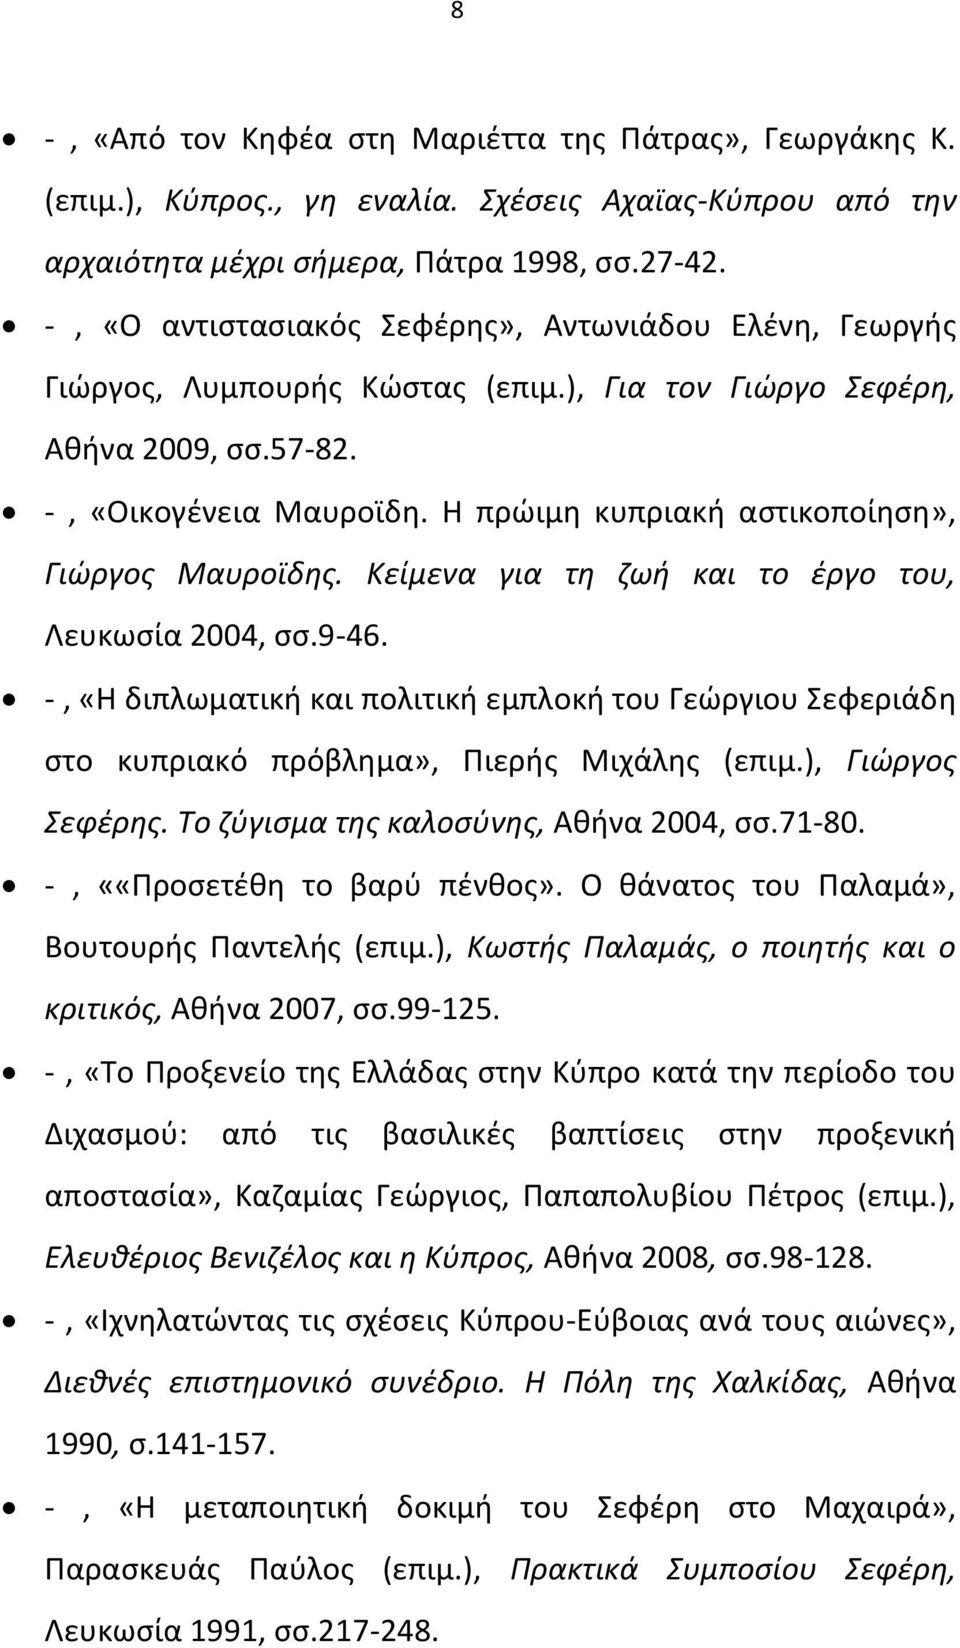 Θ πρϊιμθ κυπριακι αςτικοποίθςθ», Γιώργοσ Μαυροϊδθσ. Κείμενα για τθ ηωι και το ζργο του, Λευκωςία 2004, ςς.9-46.